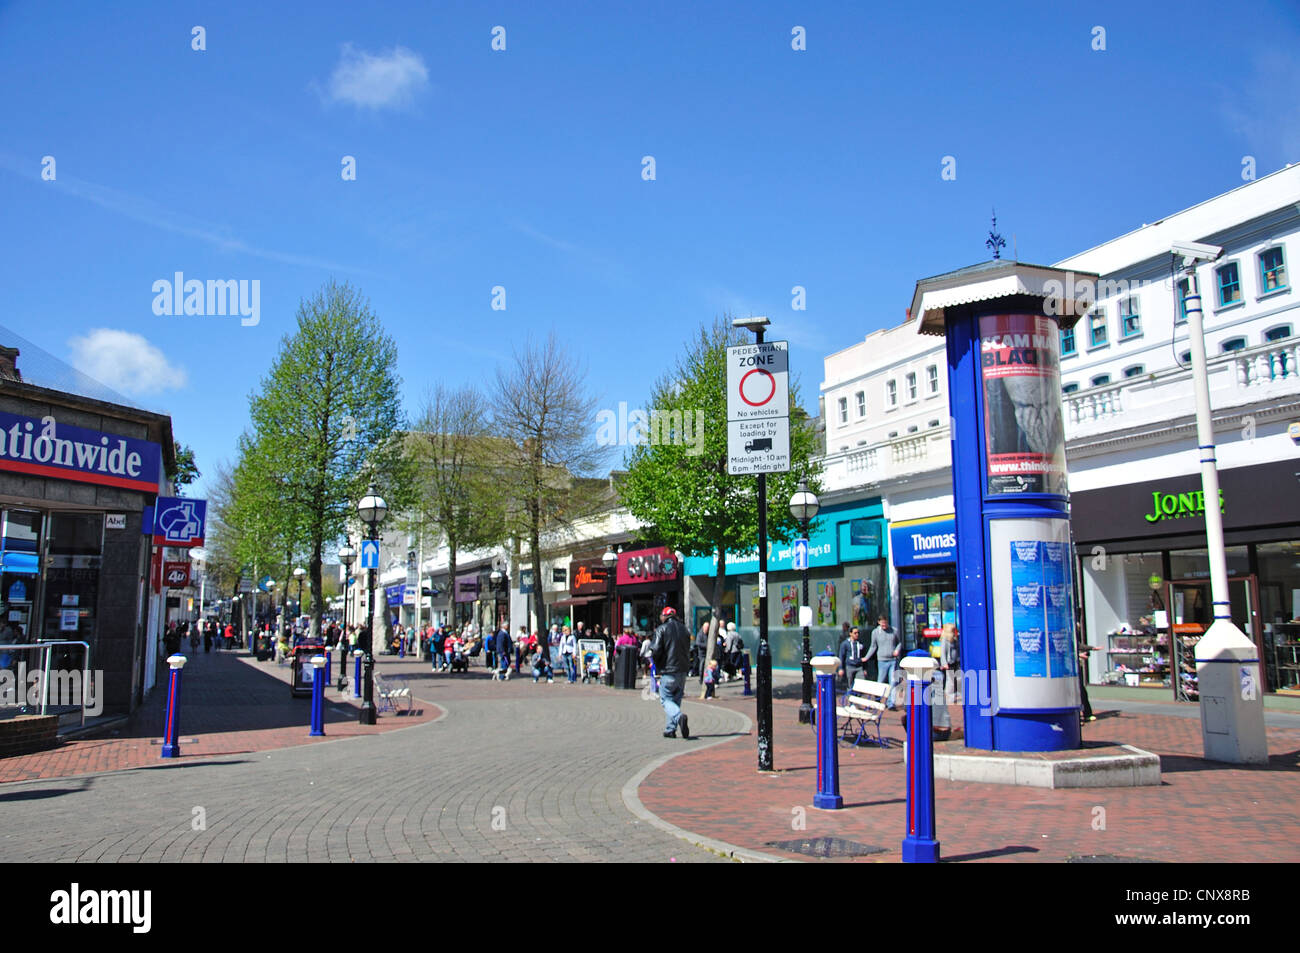 Le centre-ville piétonnier, Terminius Road, Eastbourne, East Sussex, Angleterre, Royaume-Uni Banque D'Images